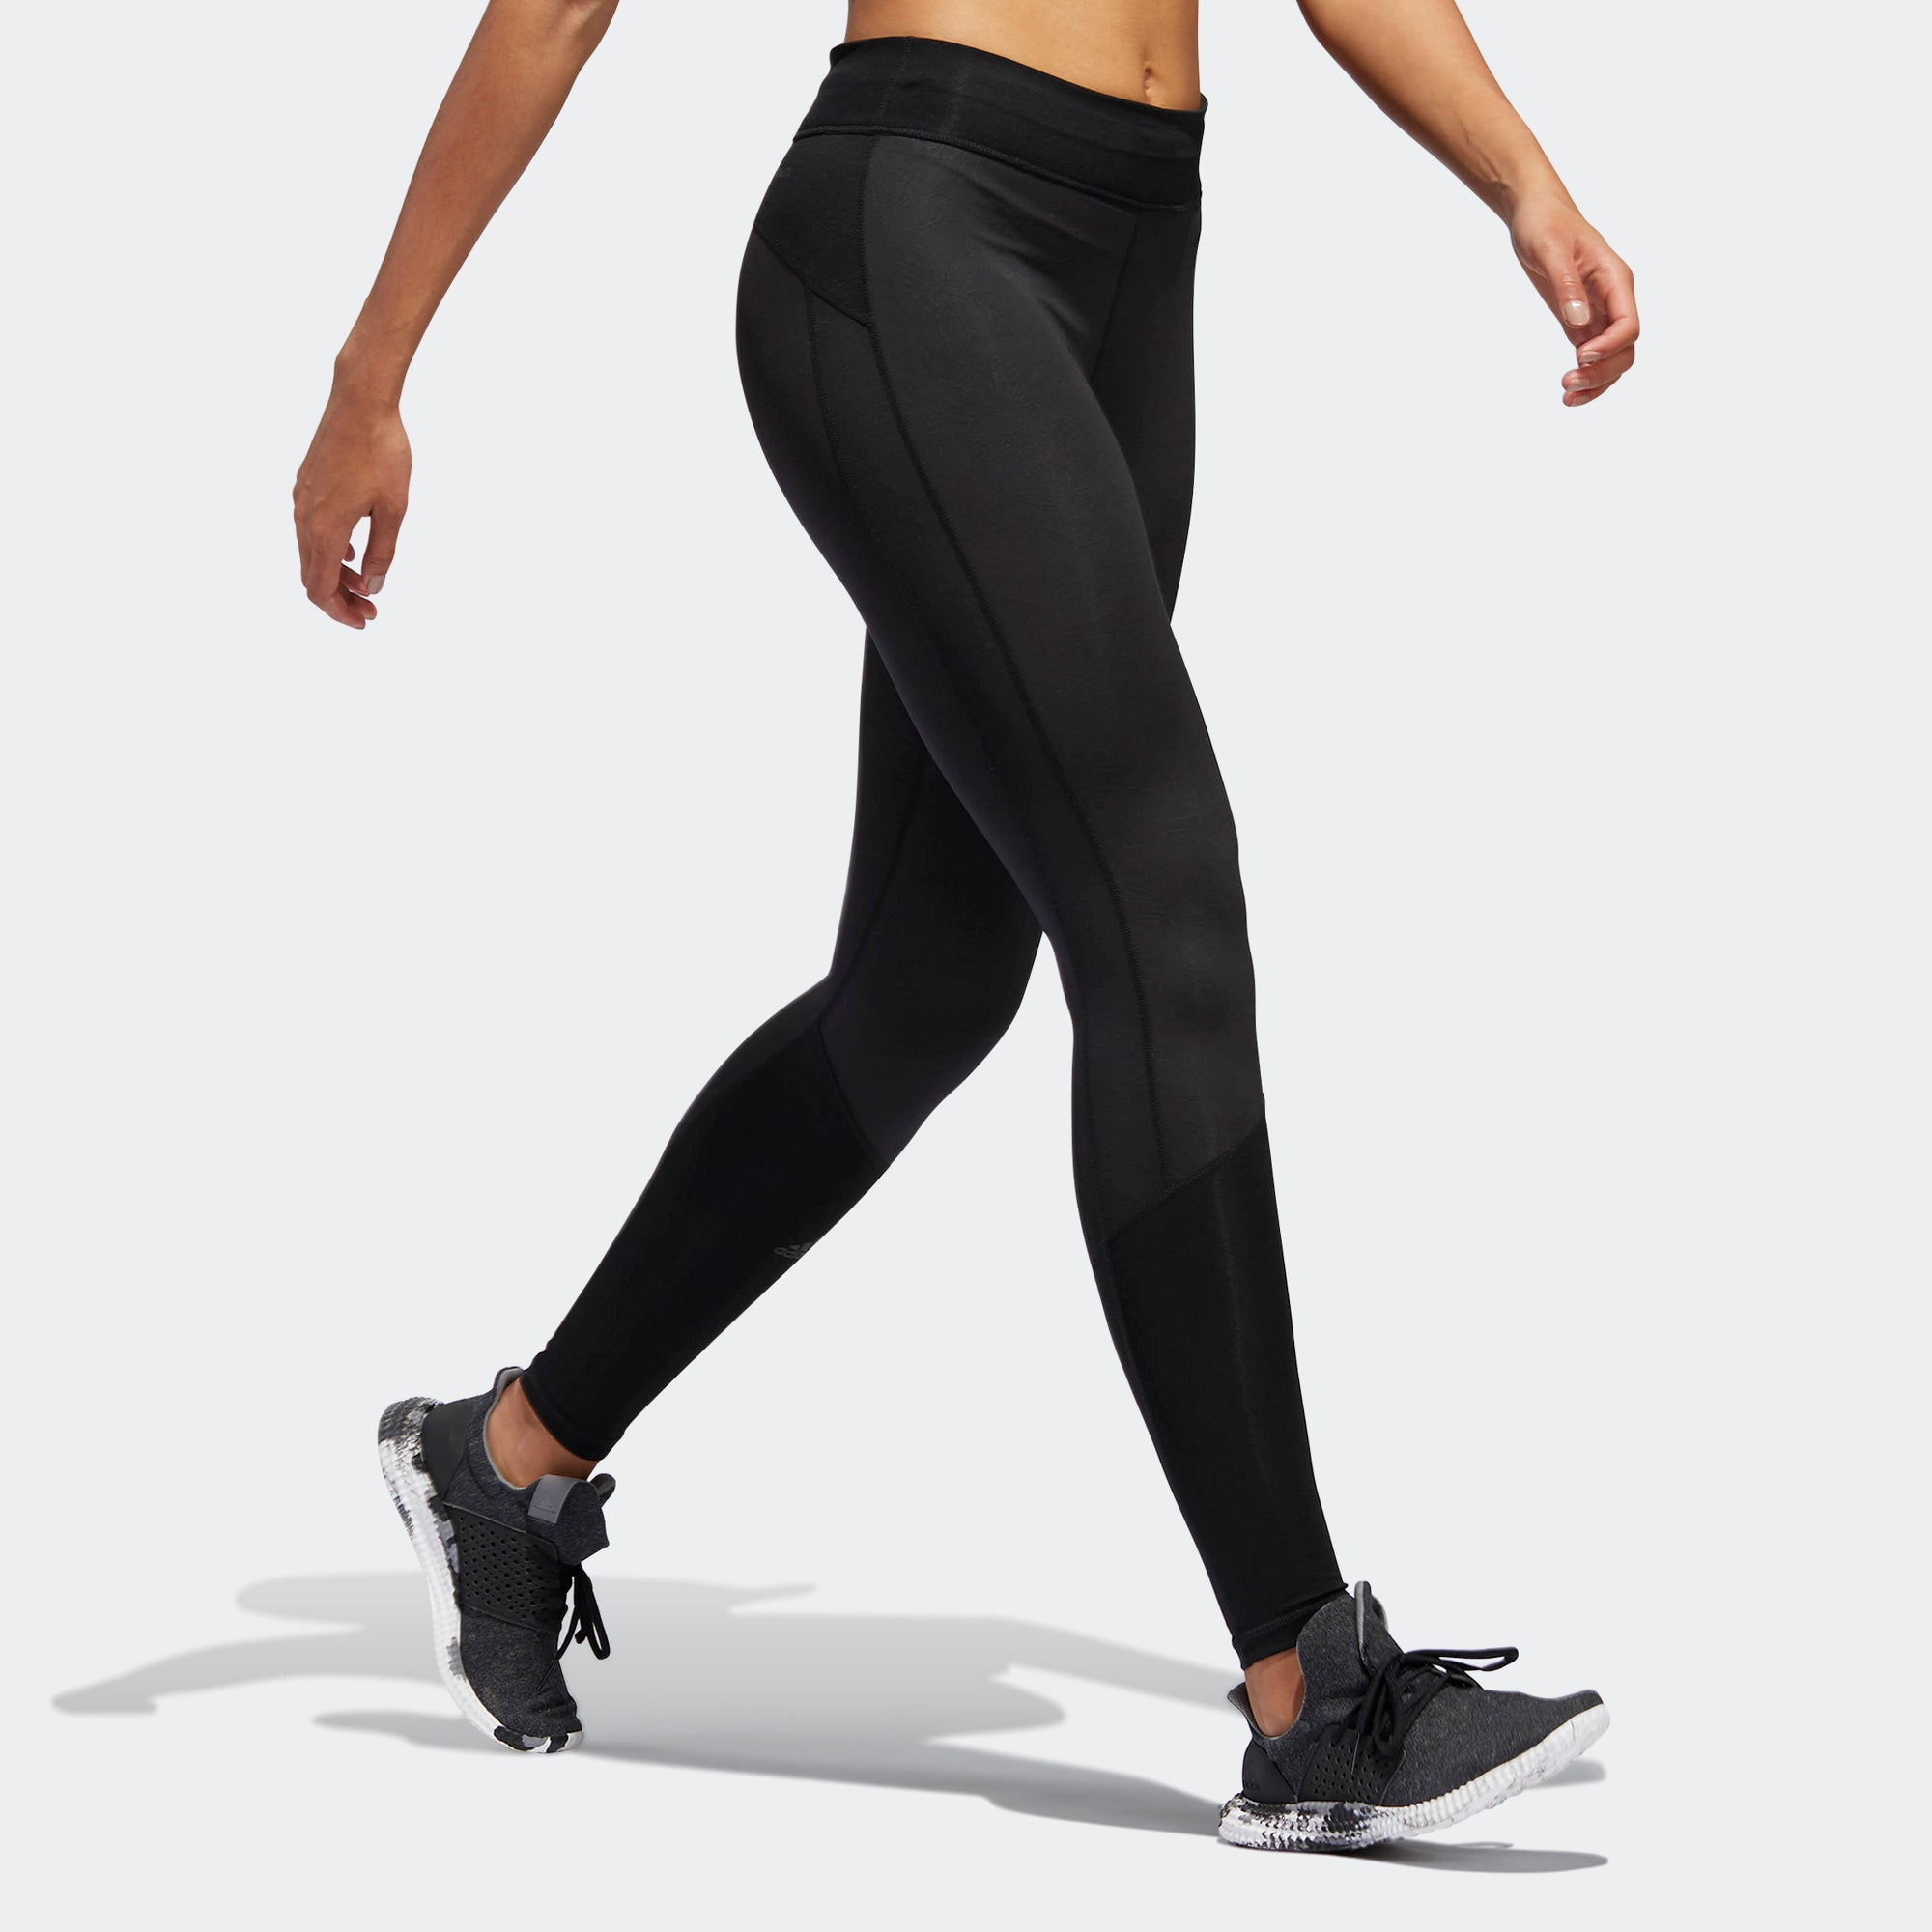 womens adidas black leggings